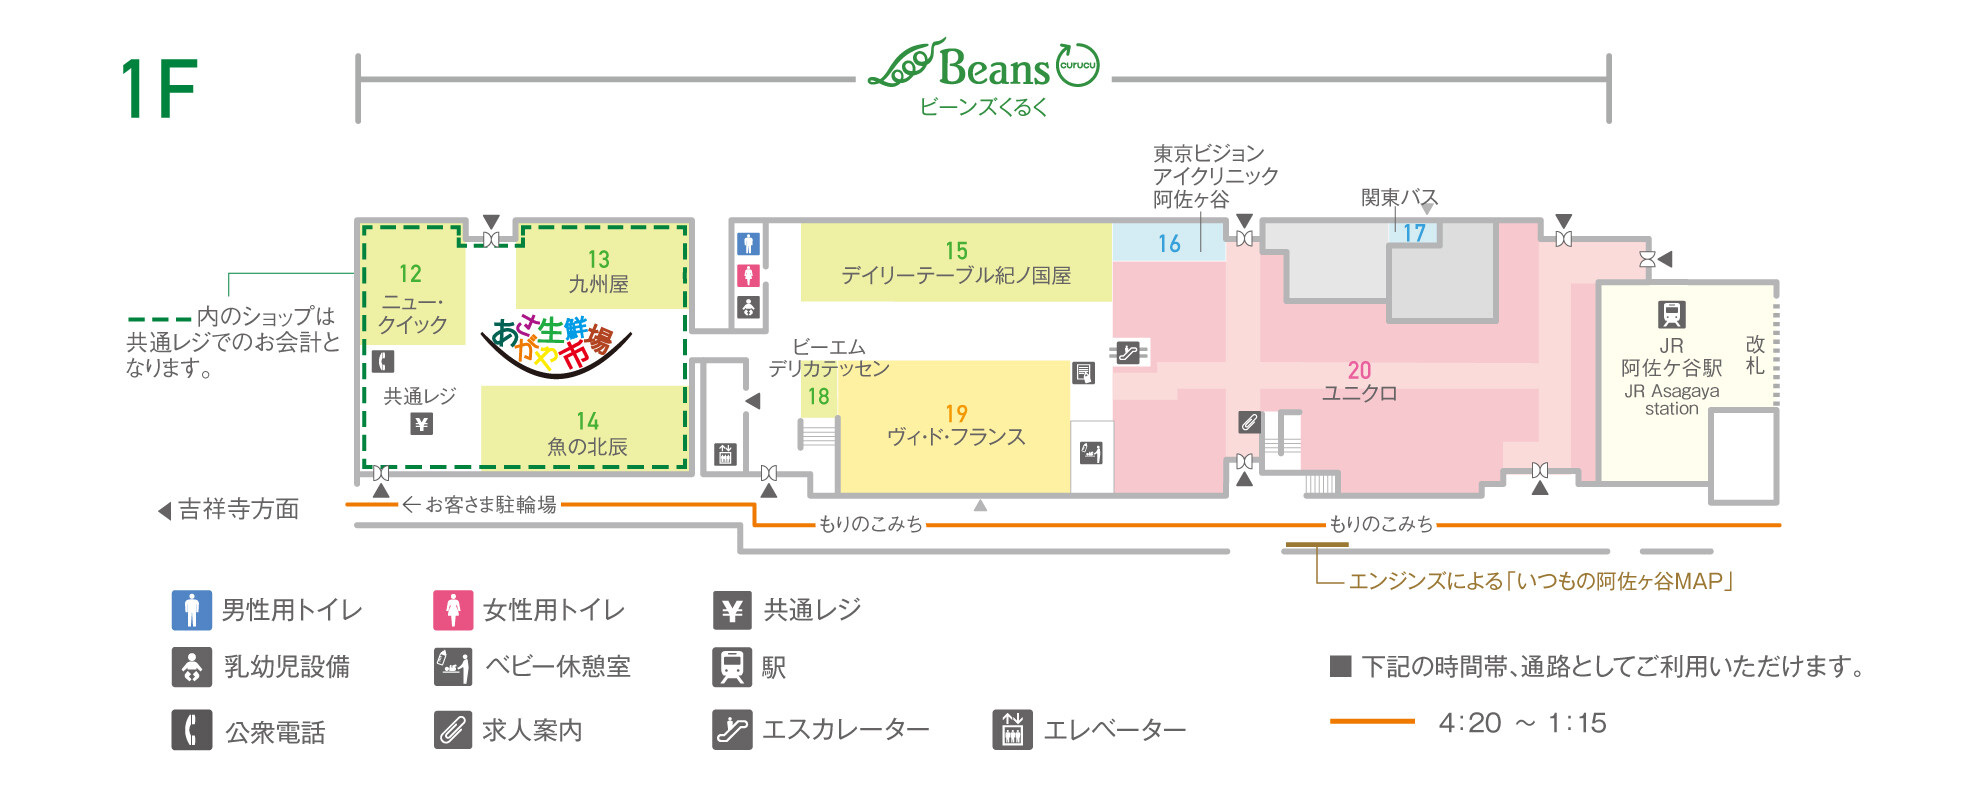 Beans阿佐谷Beans咕噜咕噜1楼层地图